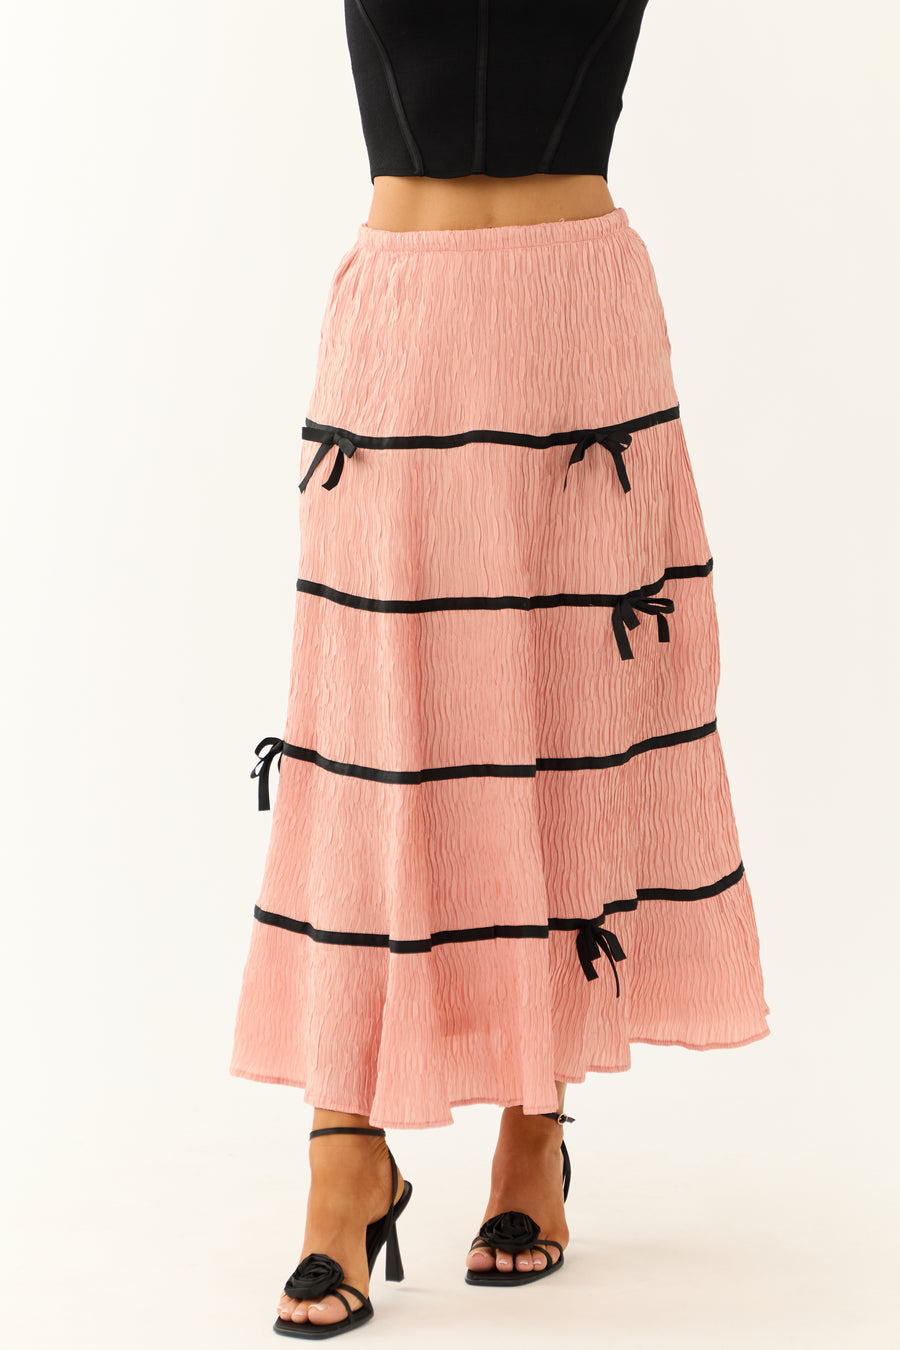 Cherry Blossom Bow Contrast Trim Plisse Skirt